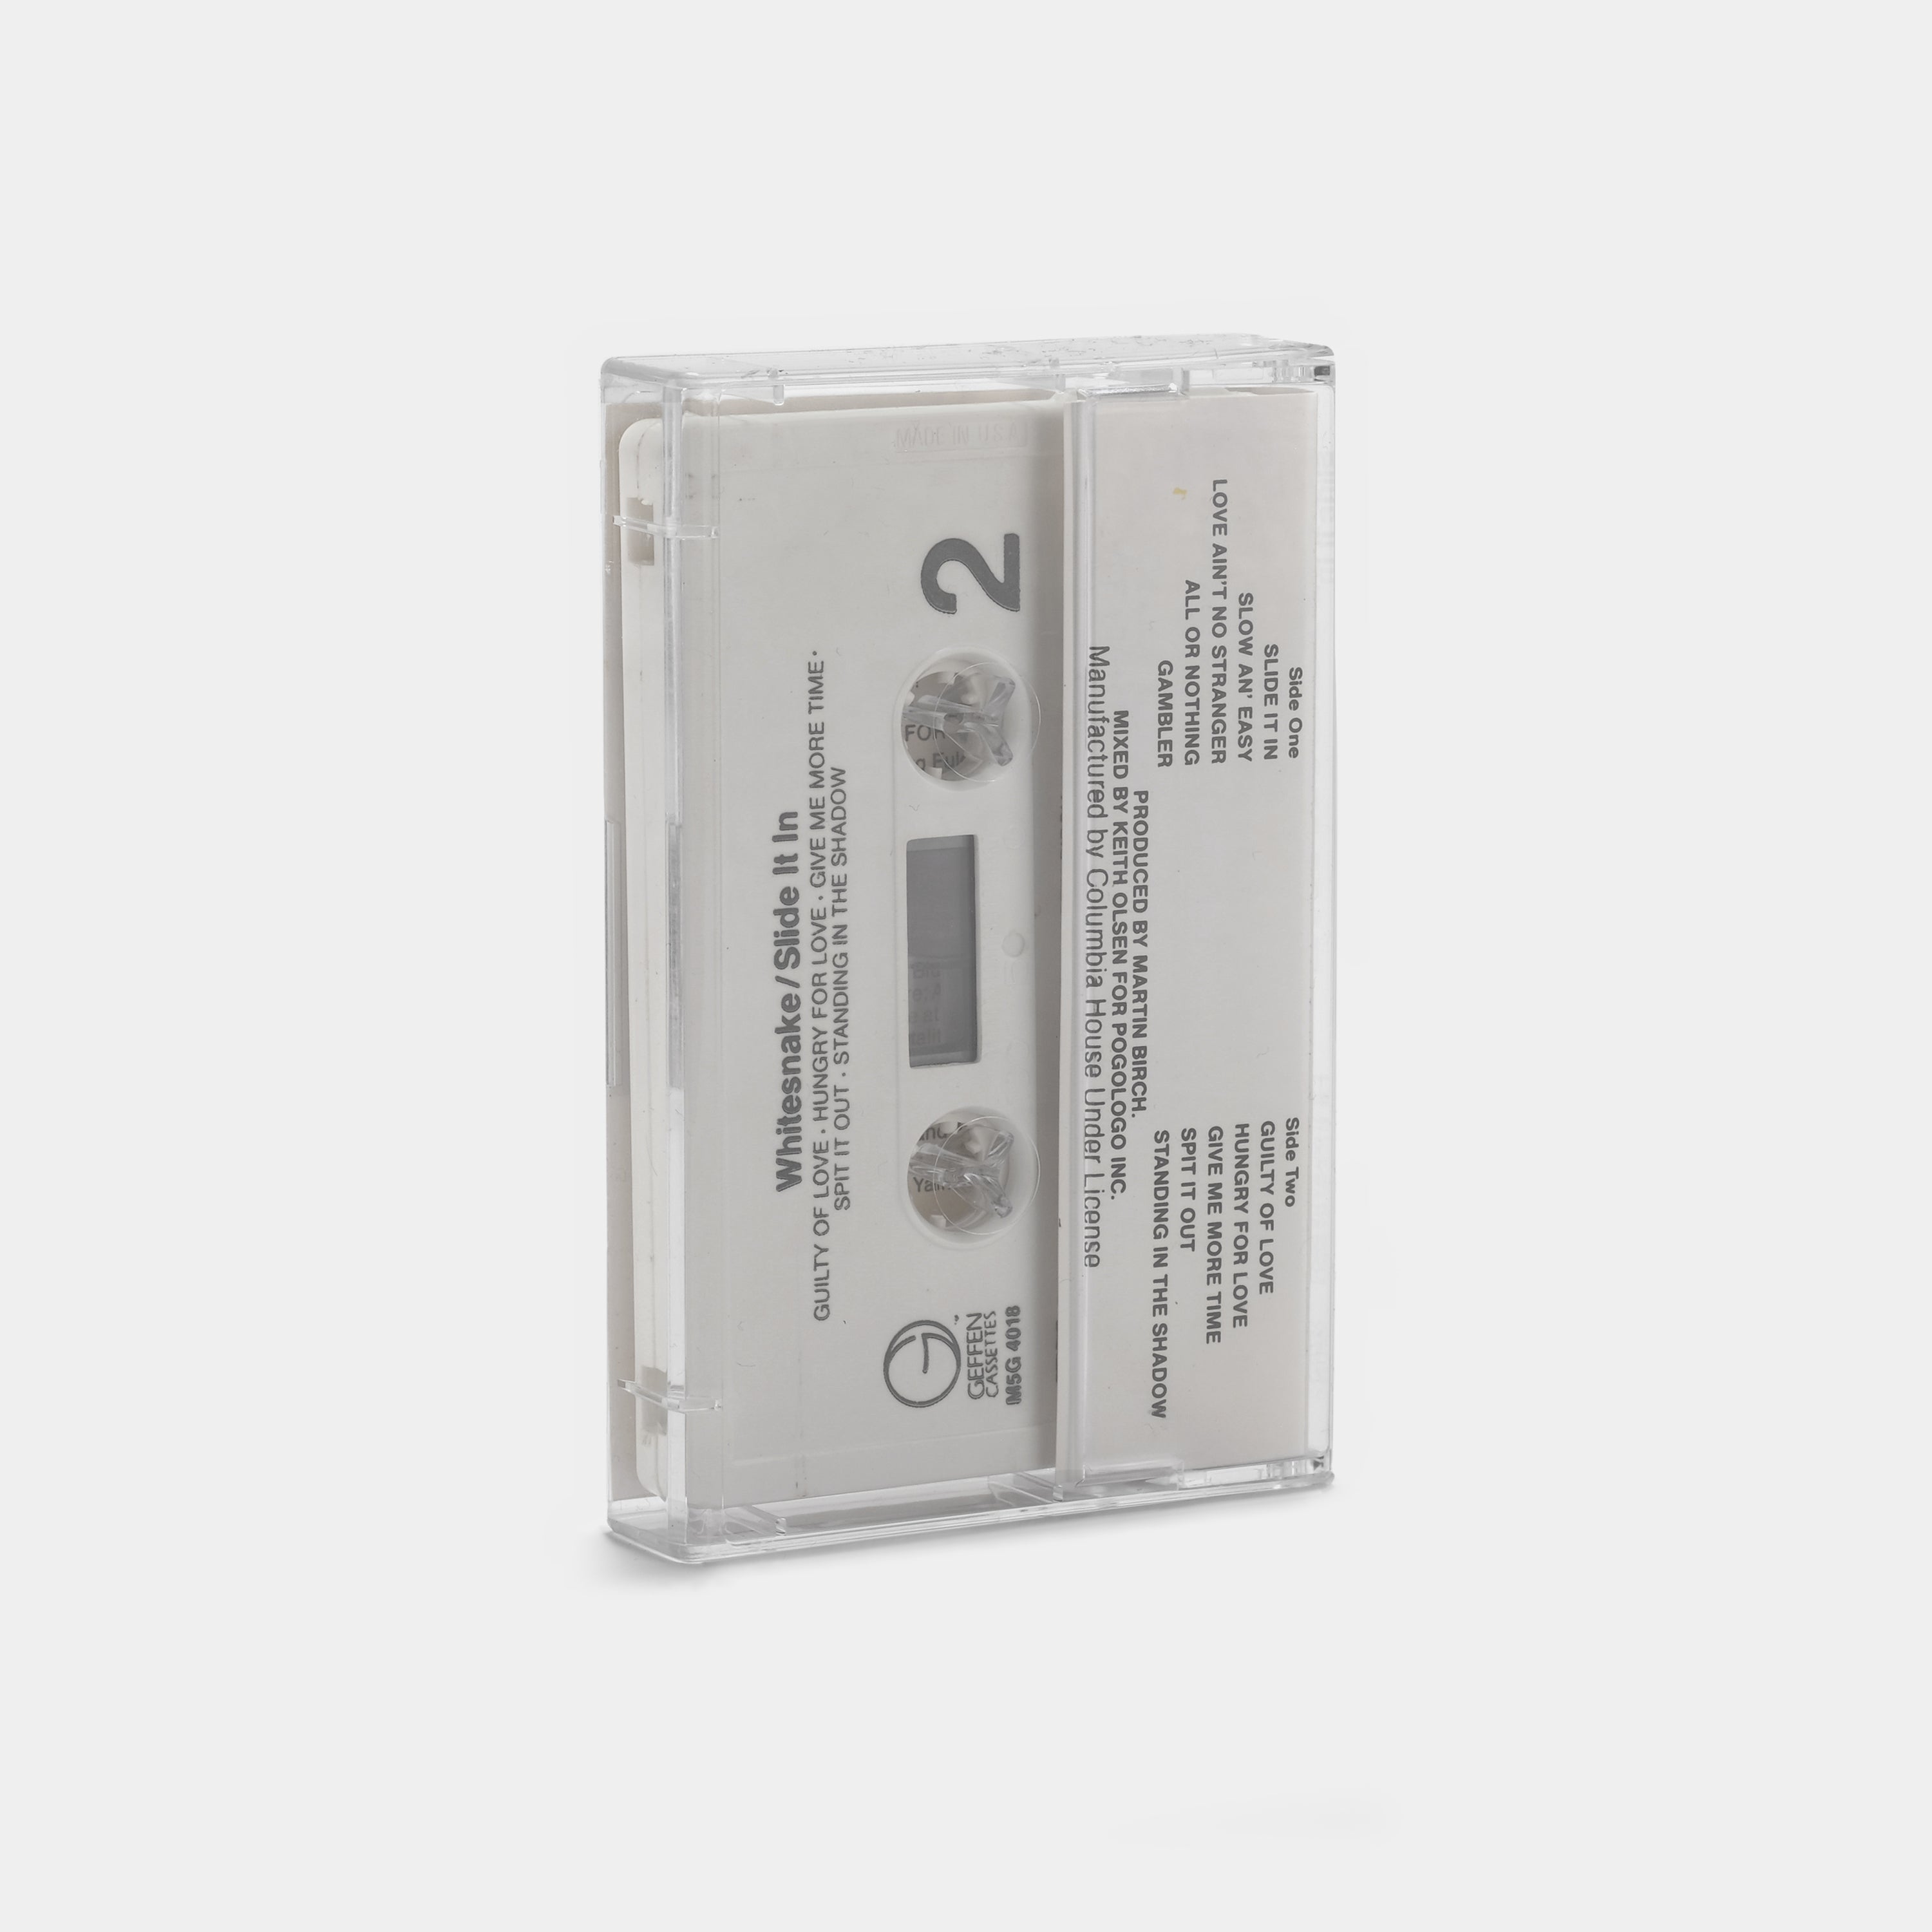 Whitesnake - Slide It In Cassette Tape